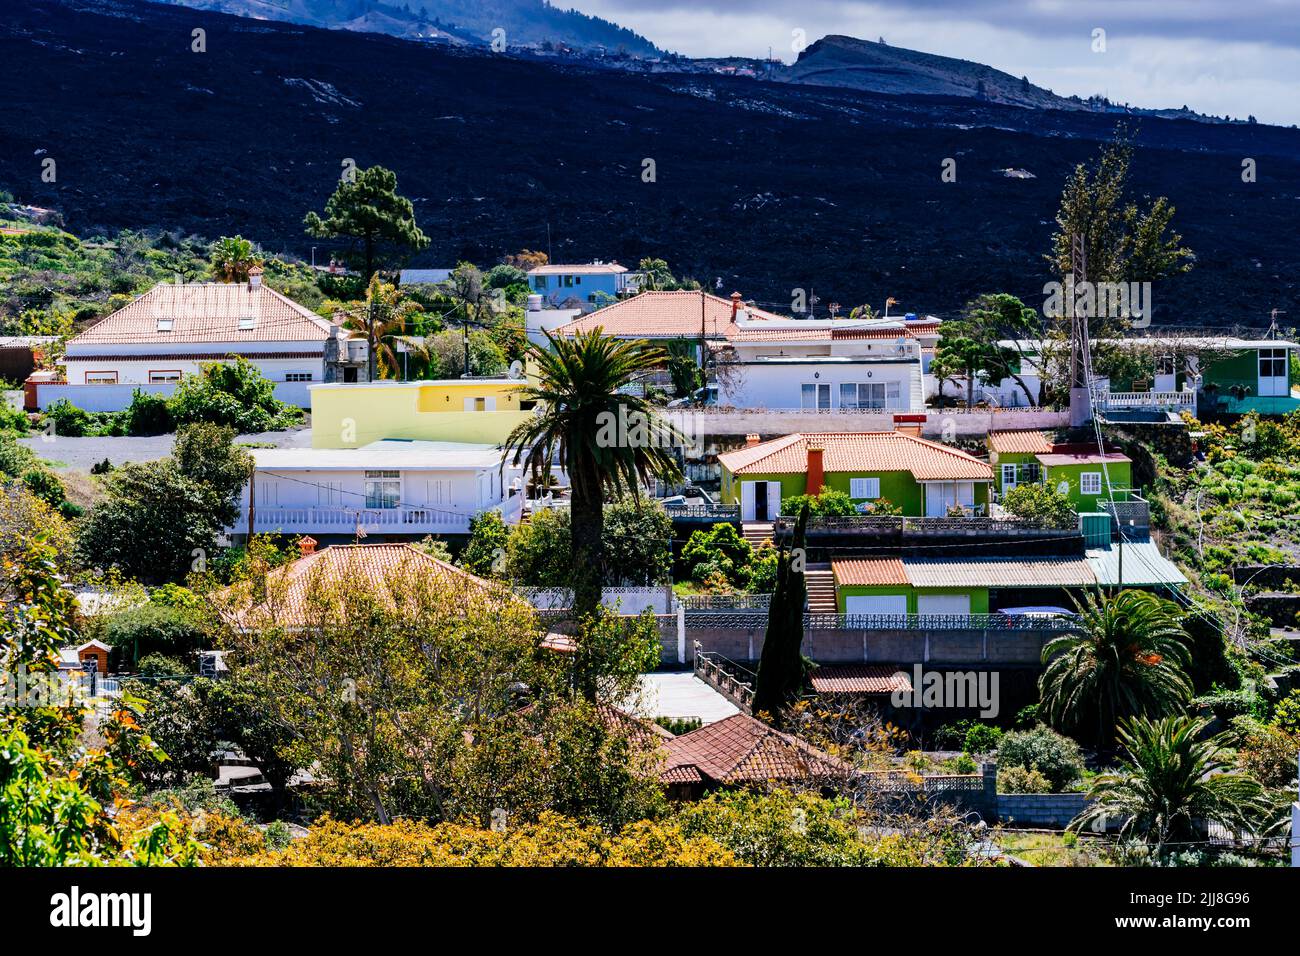 La rivière de lave solidifiée à côté des maisons. Destruction causée par la rivière Lava dans la vallée de l'Aridane. La Palma, Îles Canaries, Espagne Banque D'Images